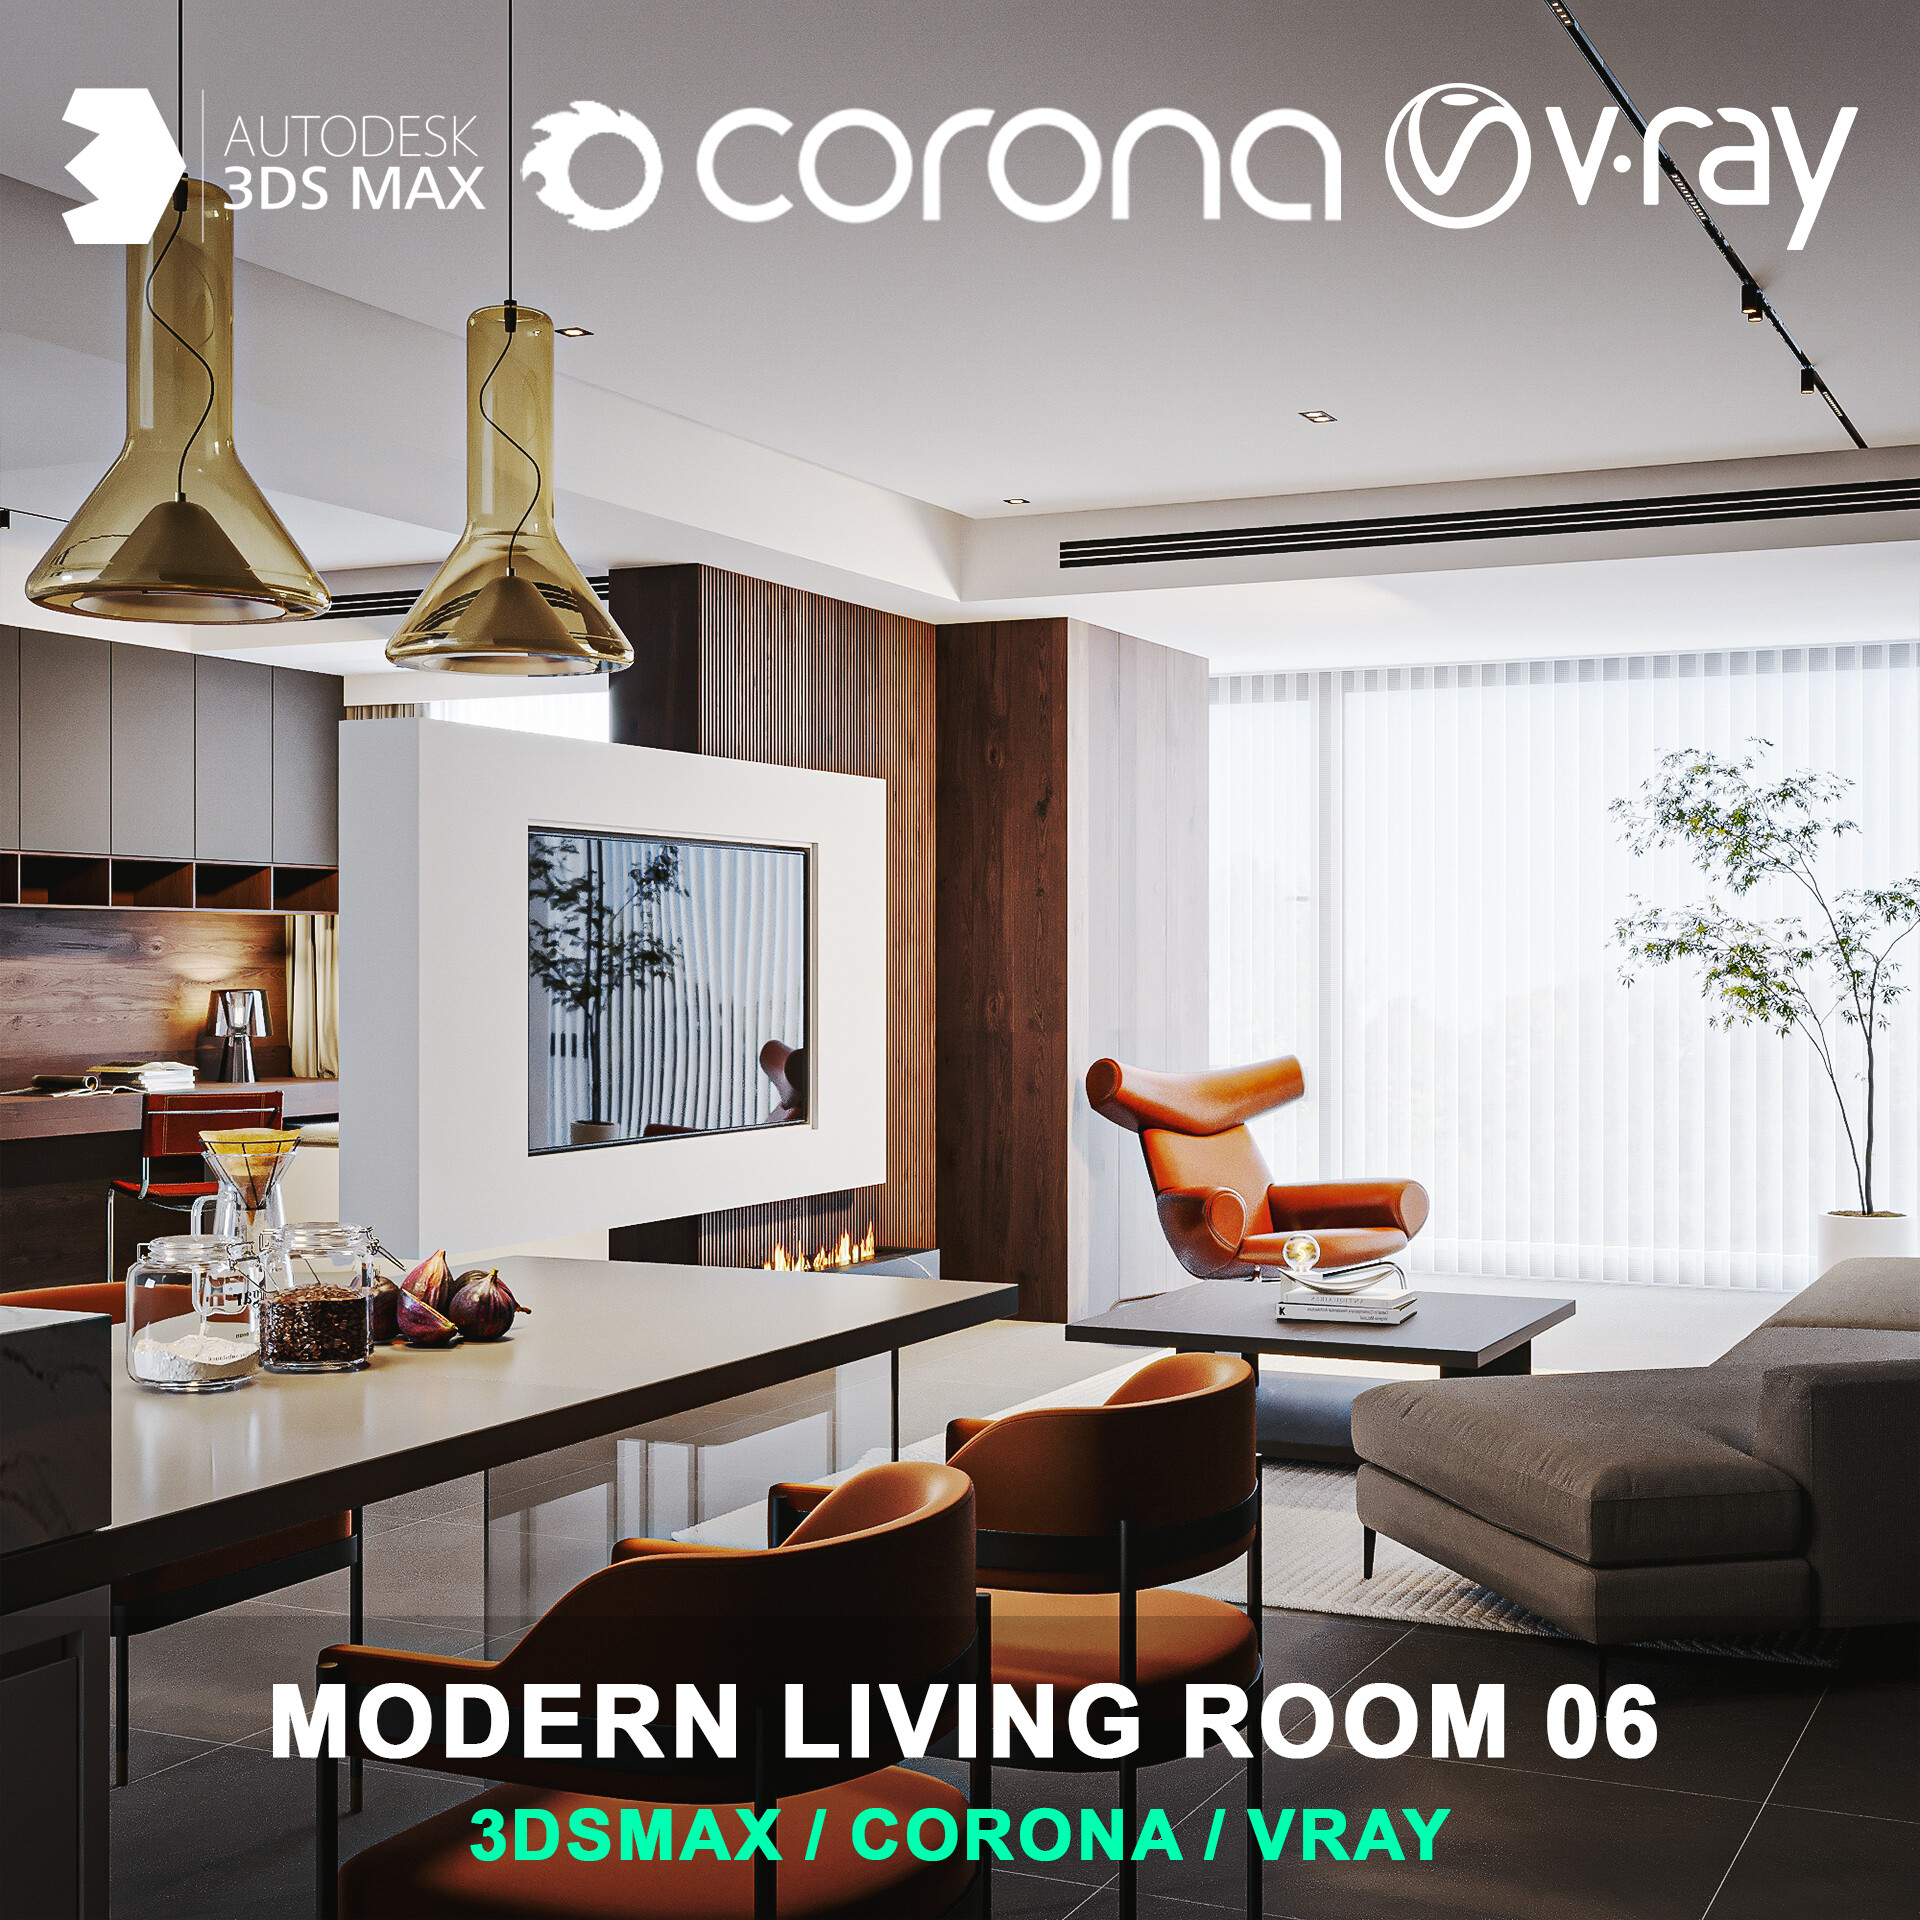 Modern living room 06 for 3DsMax